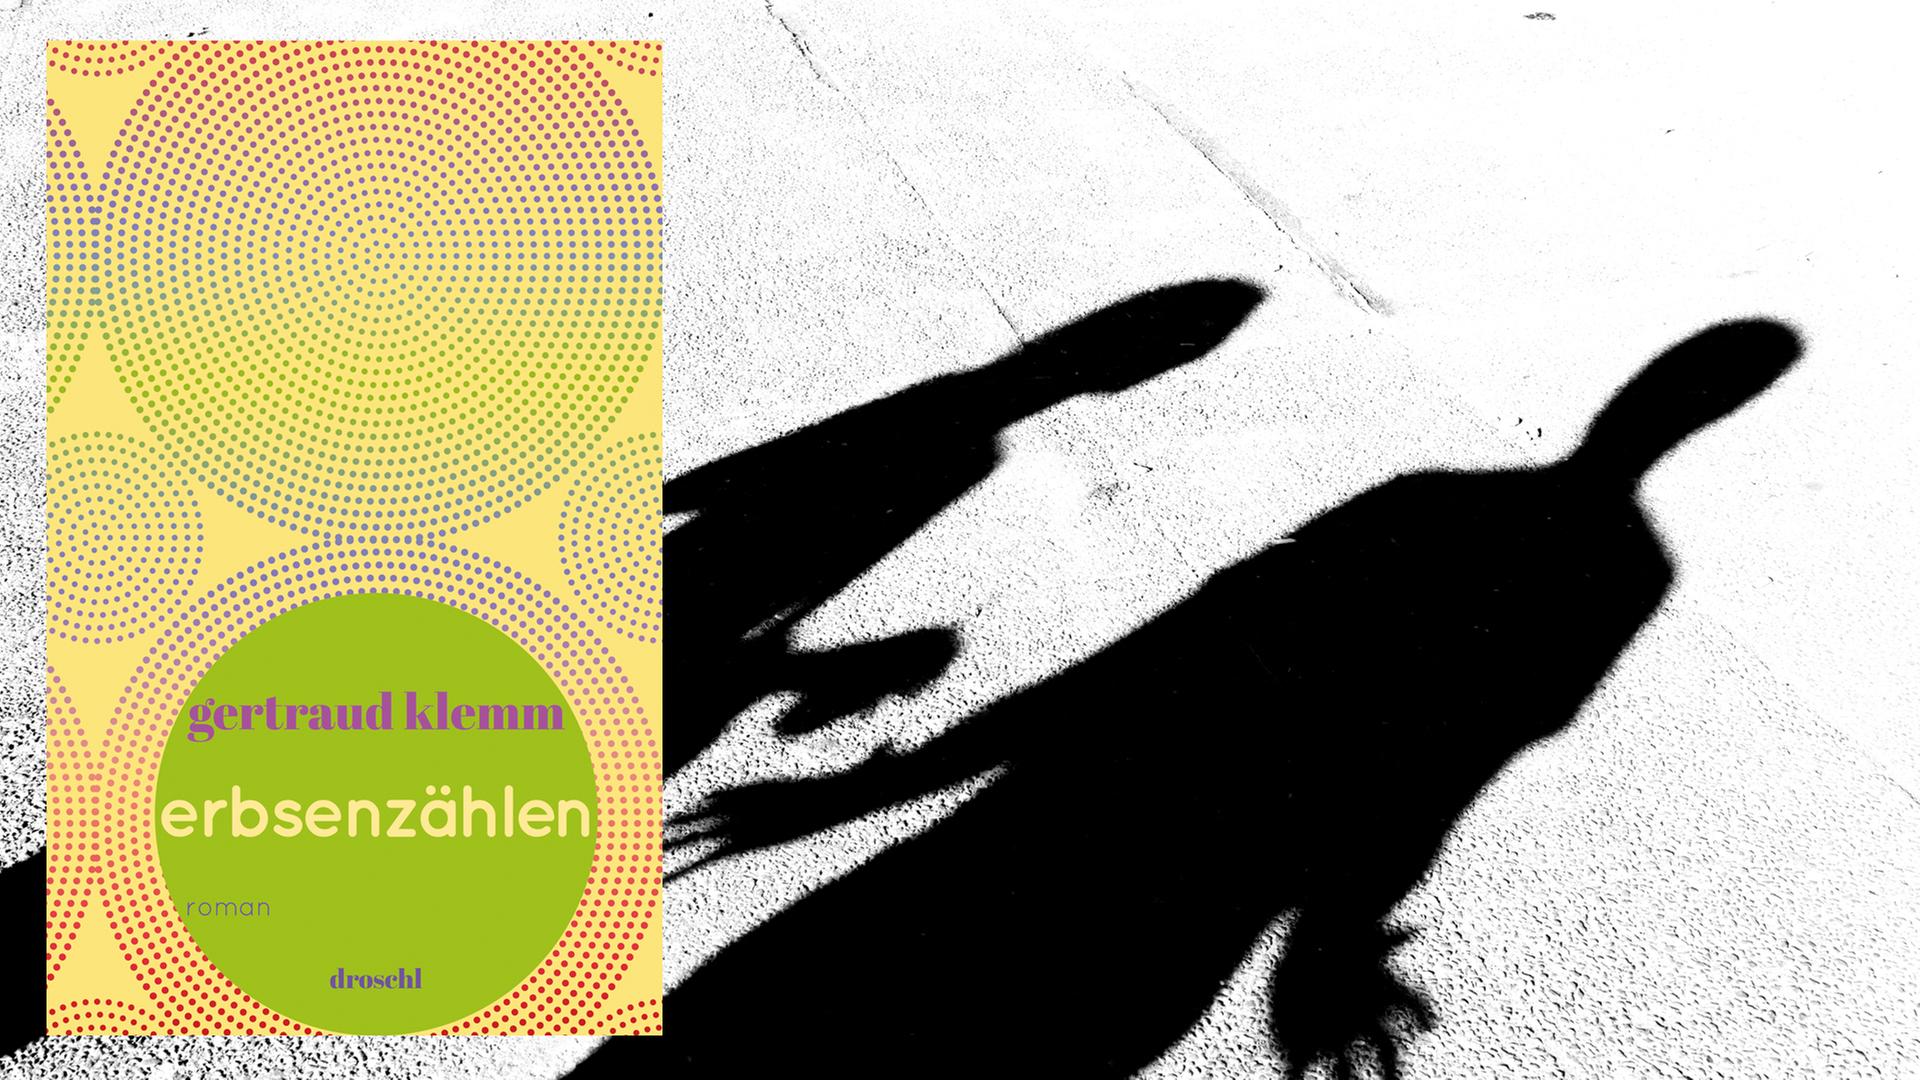 Cover von Gertraud Klemms Roman "Erbsenzählen, vor dem Hintergrund eines Fotos, auf dem die Silhouetten von einer Frau und einem Mann zu sehen sind.